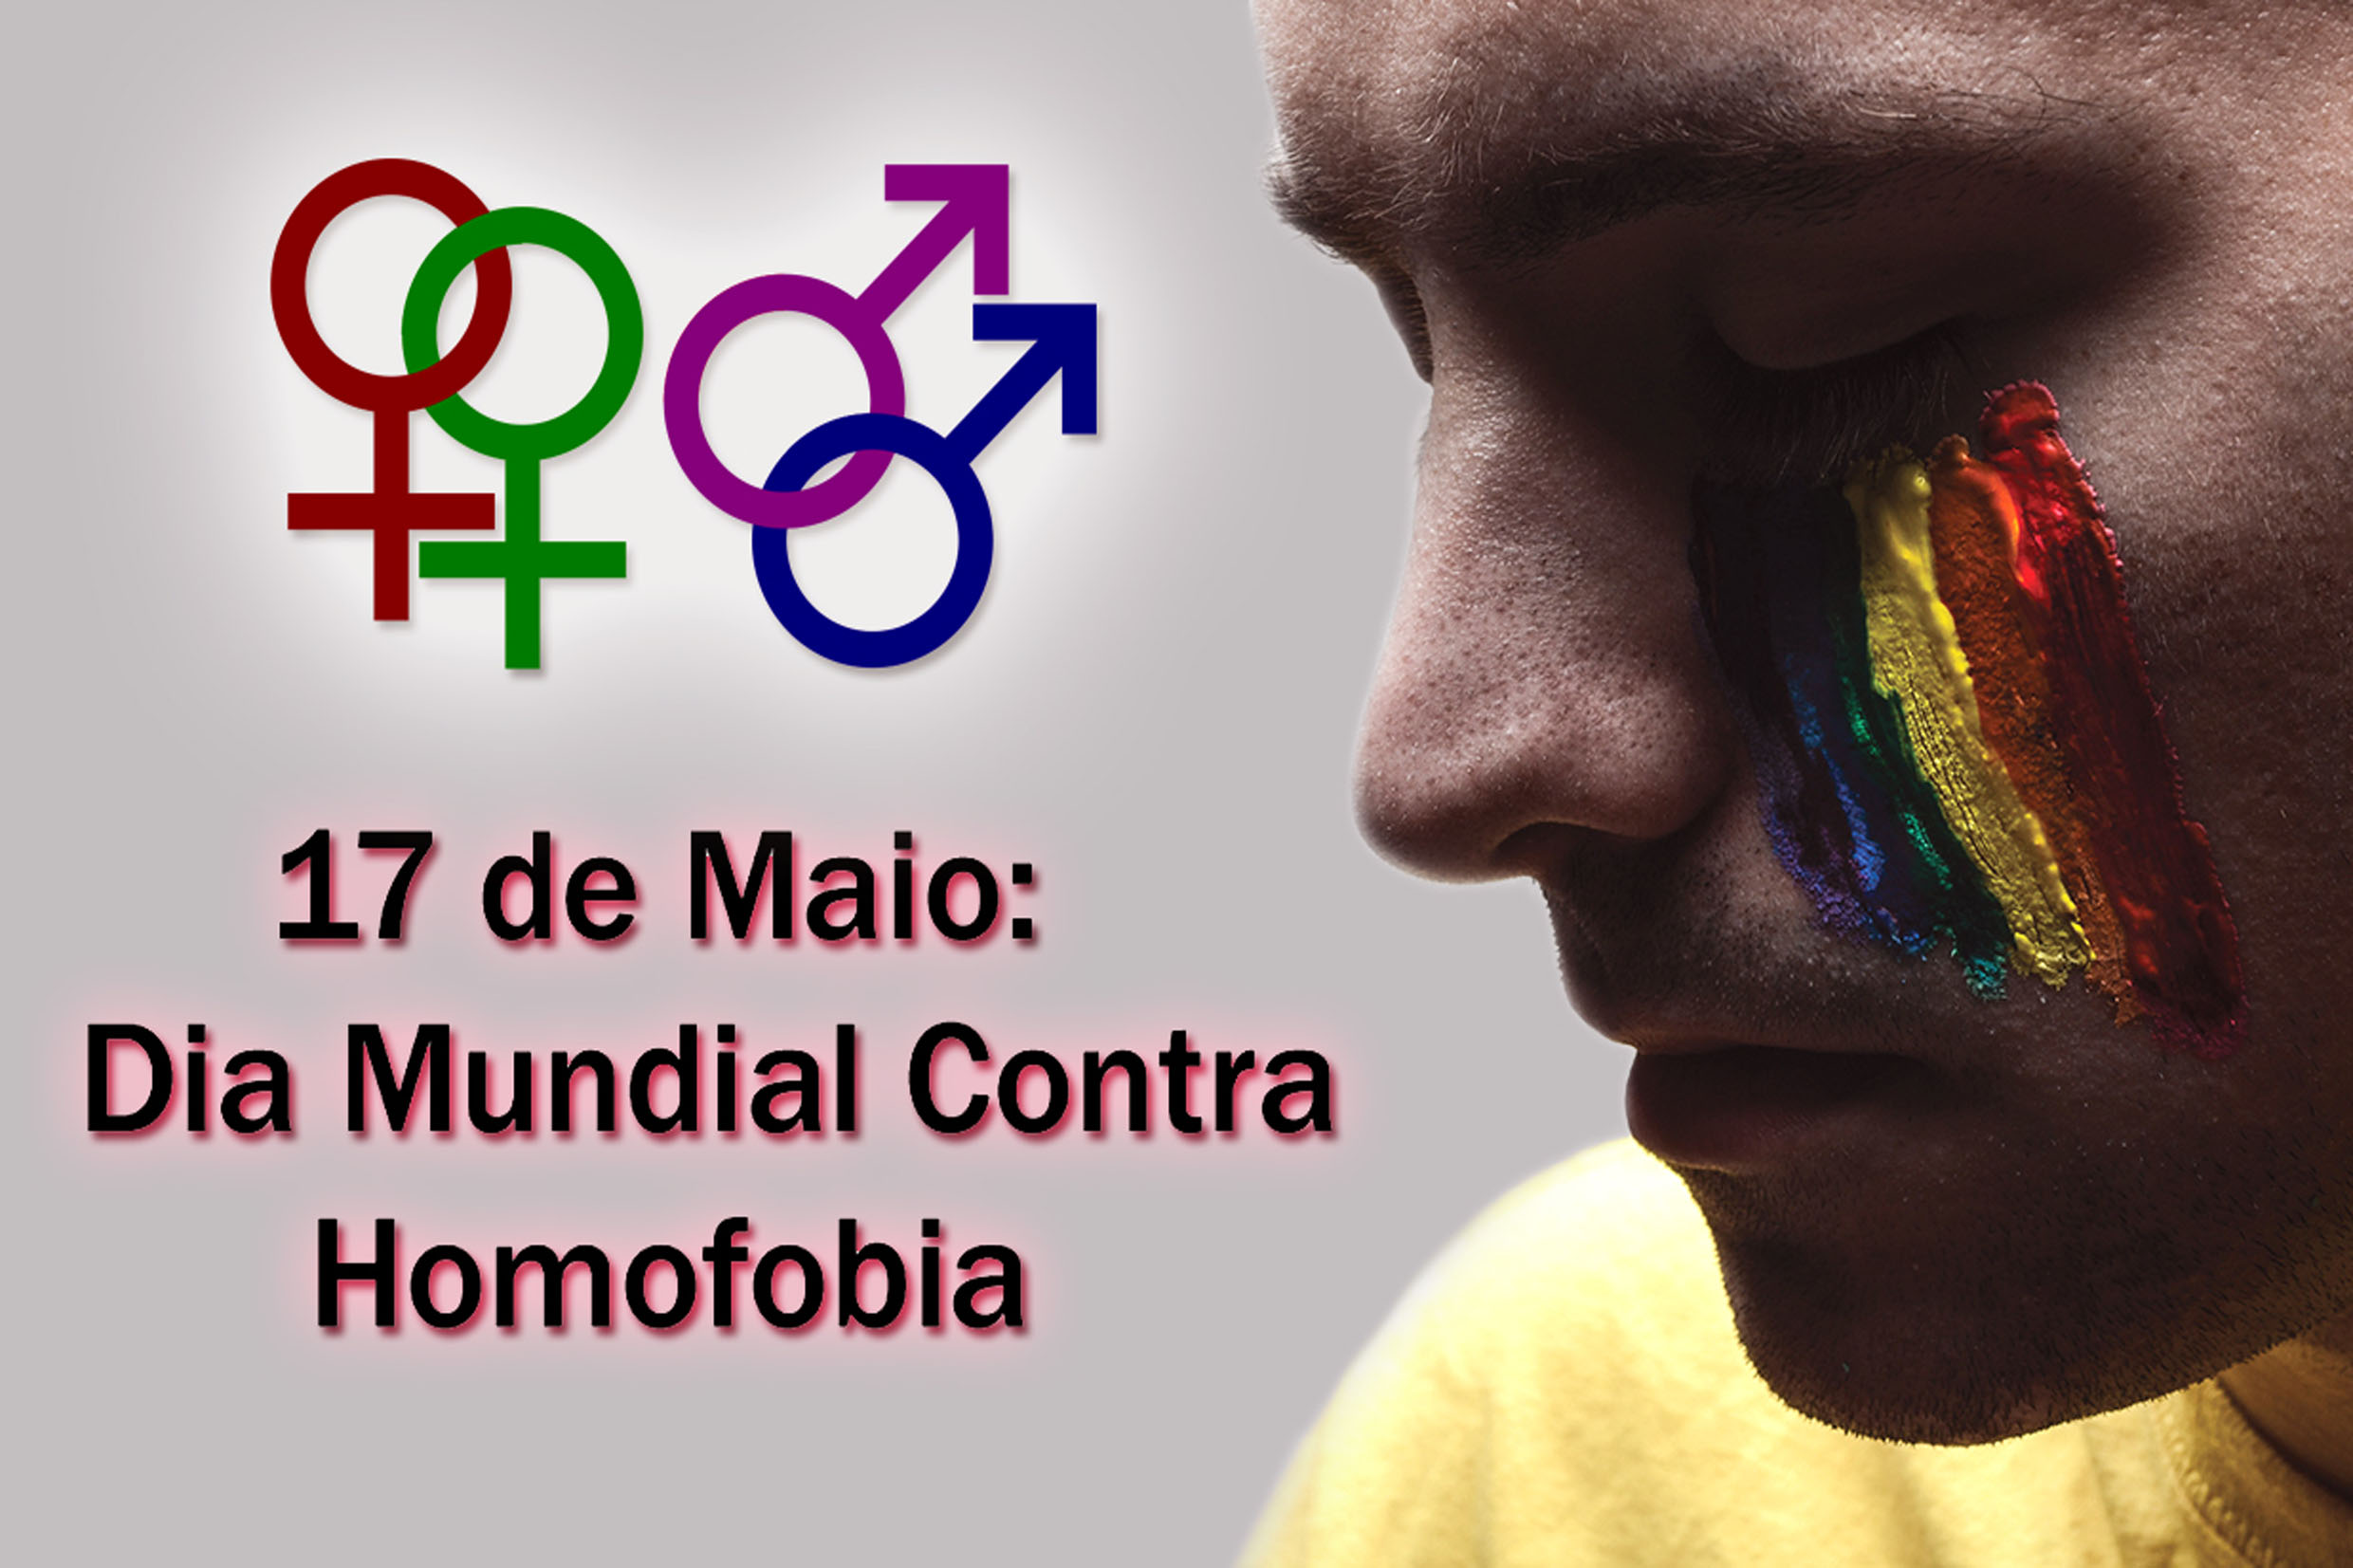 DIA MUNDIAL CONTRA HOMOFOBIA